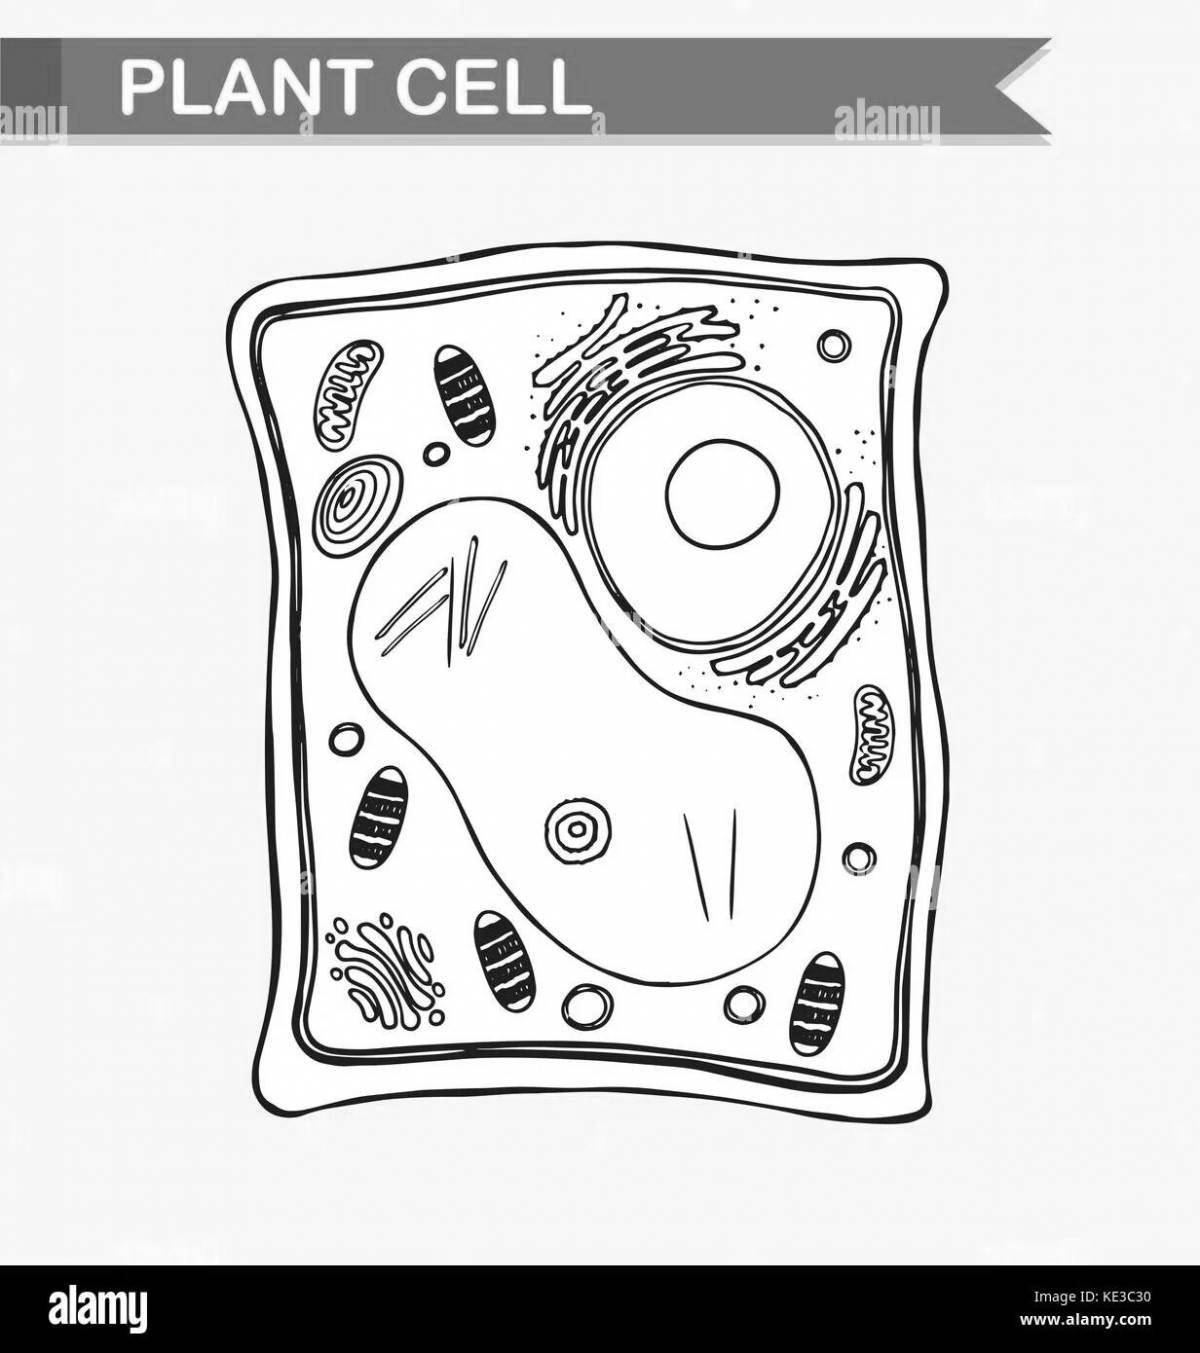 Раскраска яркая структура клеток растений